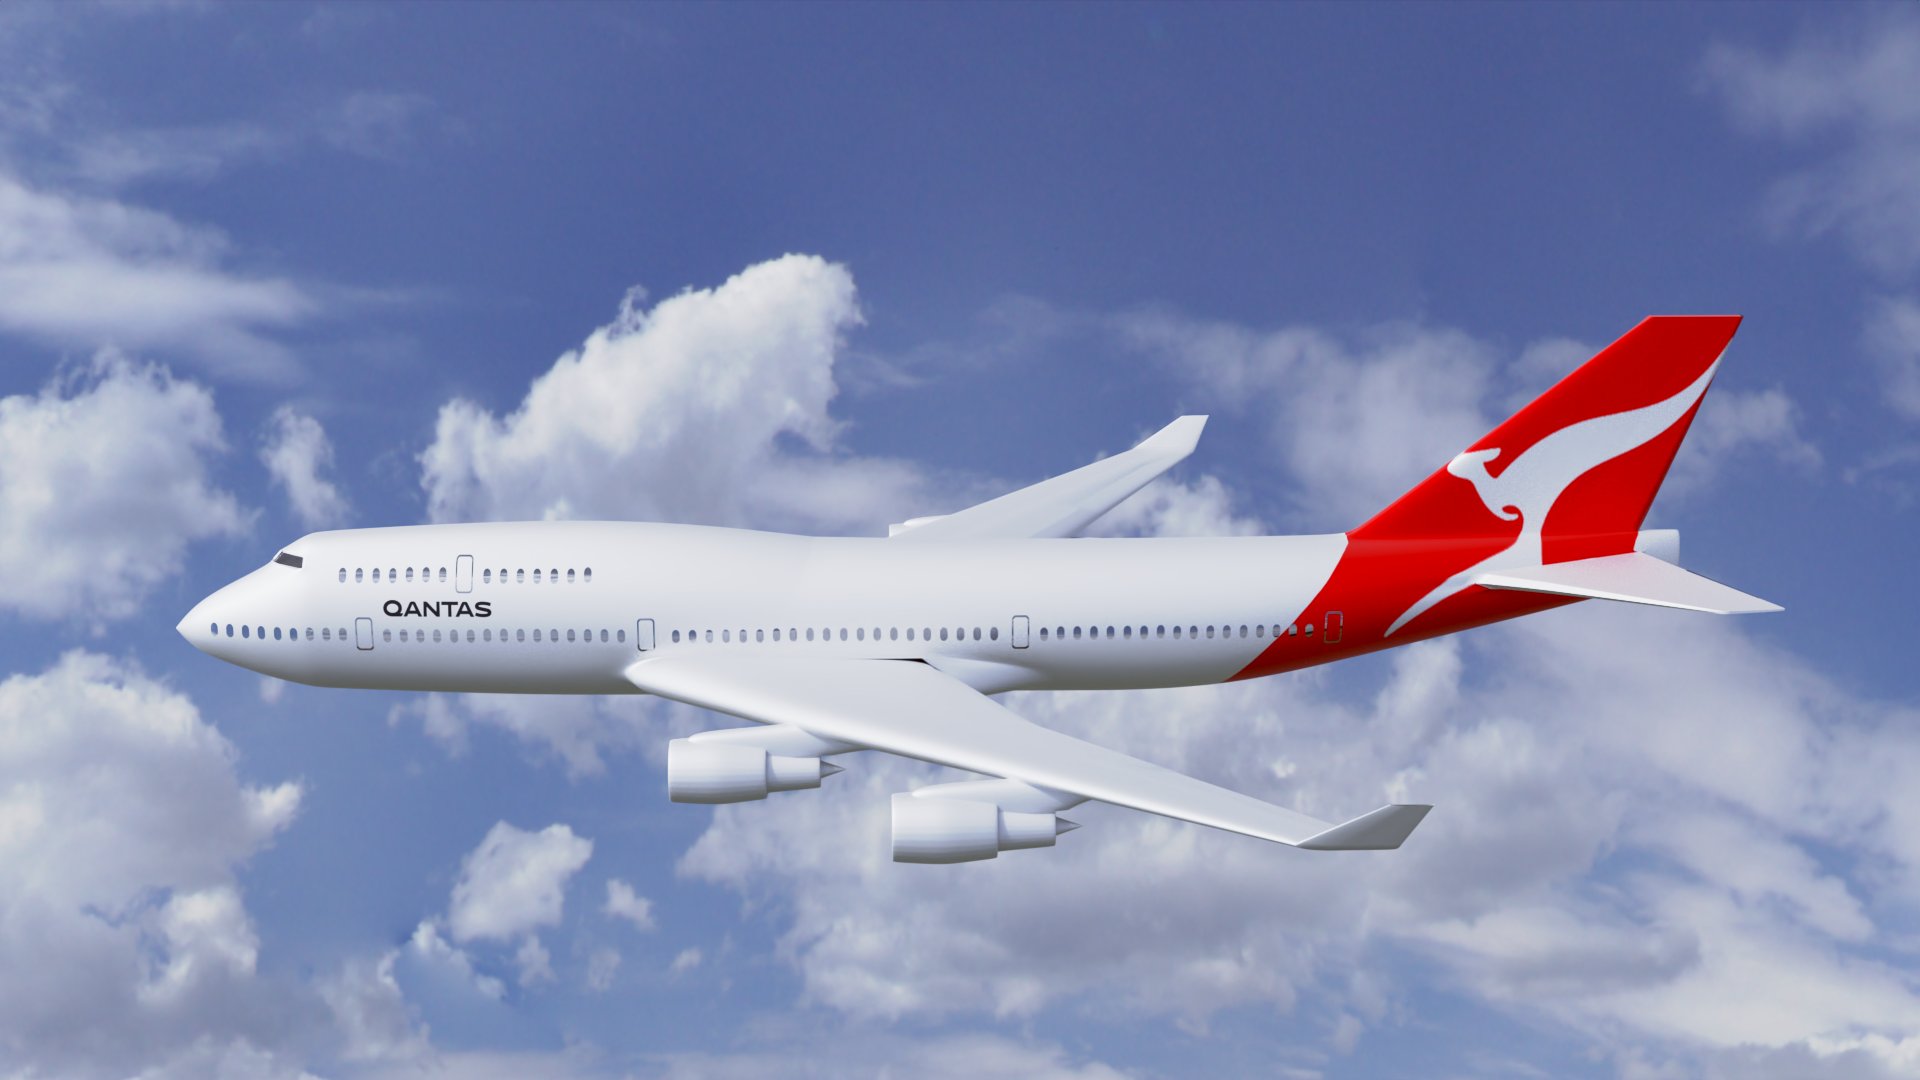 Αυστραλία: Σήμα κινδύνου εξέπεμψε Boeing με πάνω από 100 επιβαίνοντες - Αίσιο τέλος στην περιπέτεια